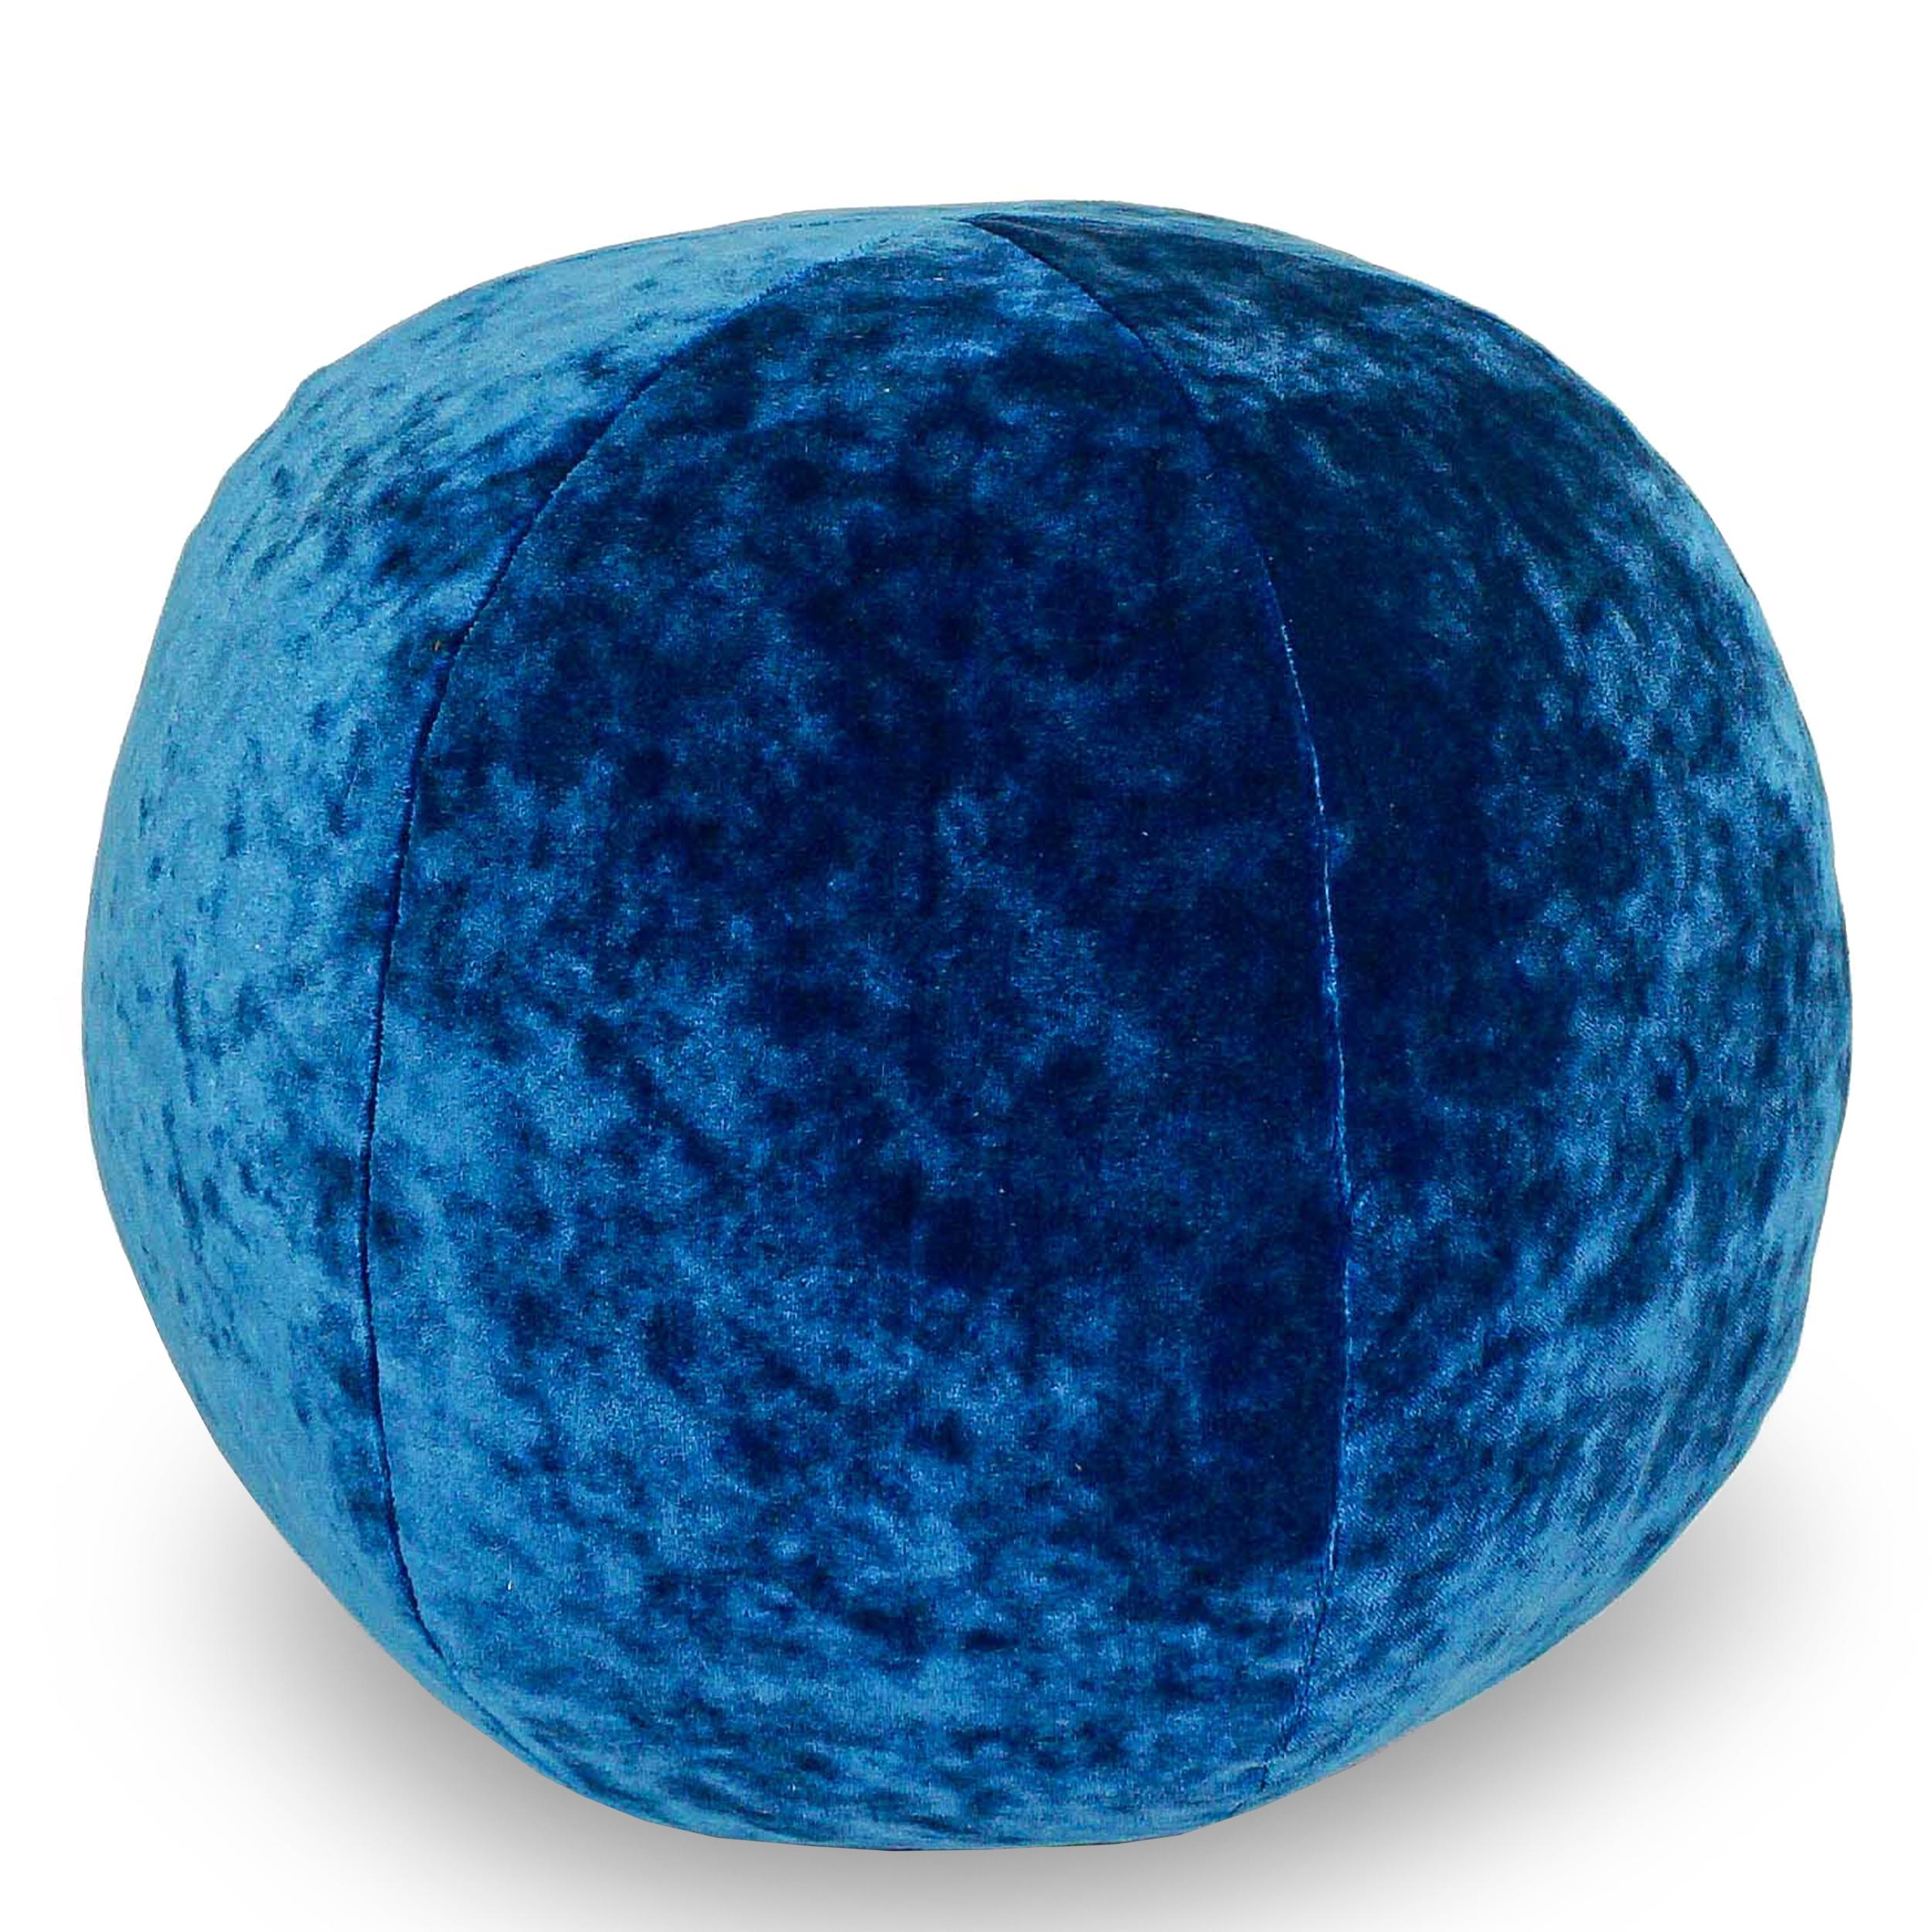 Elektrisch blaues Ballkissen aus zerknittertem Samt. Kann in Größe und Stoff angepasst werden.

Abmessungen:
Außen: 12